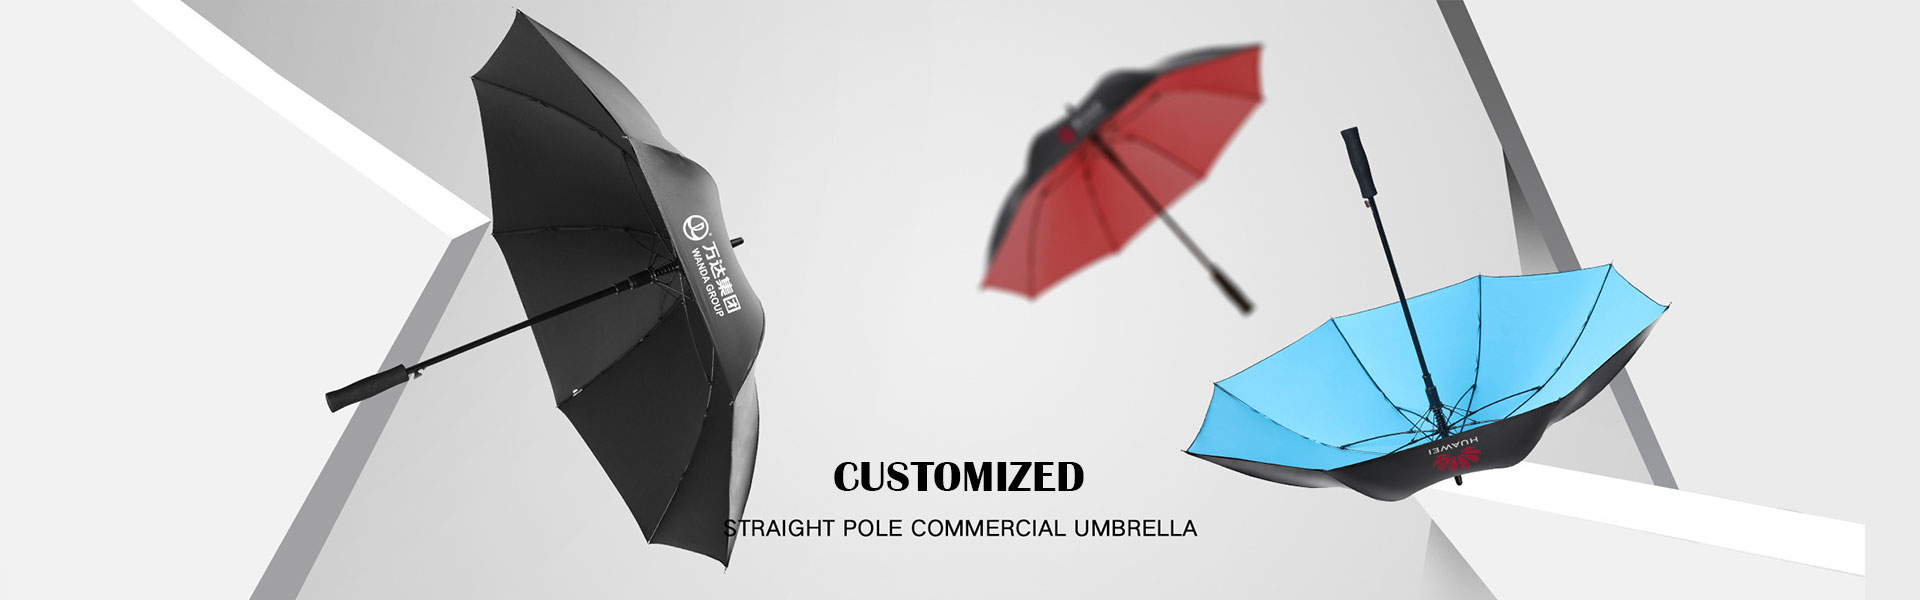 custom advertising umbrella